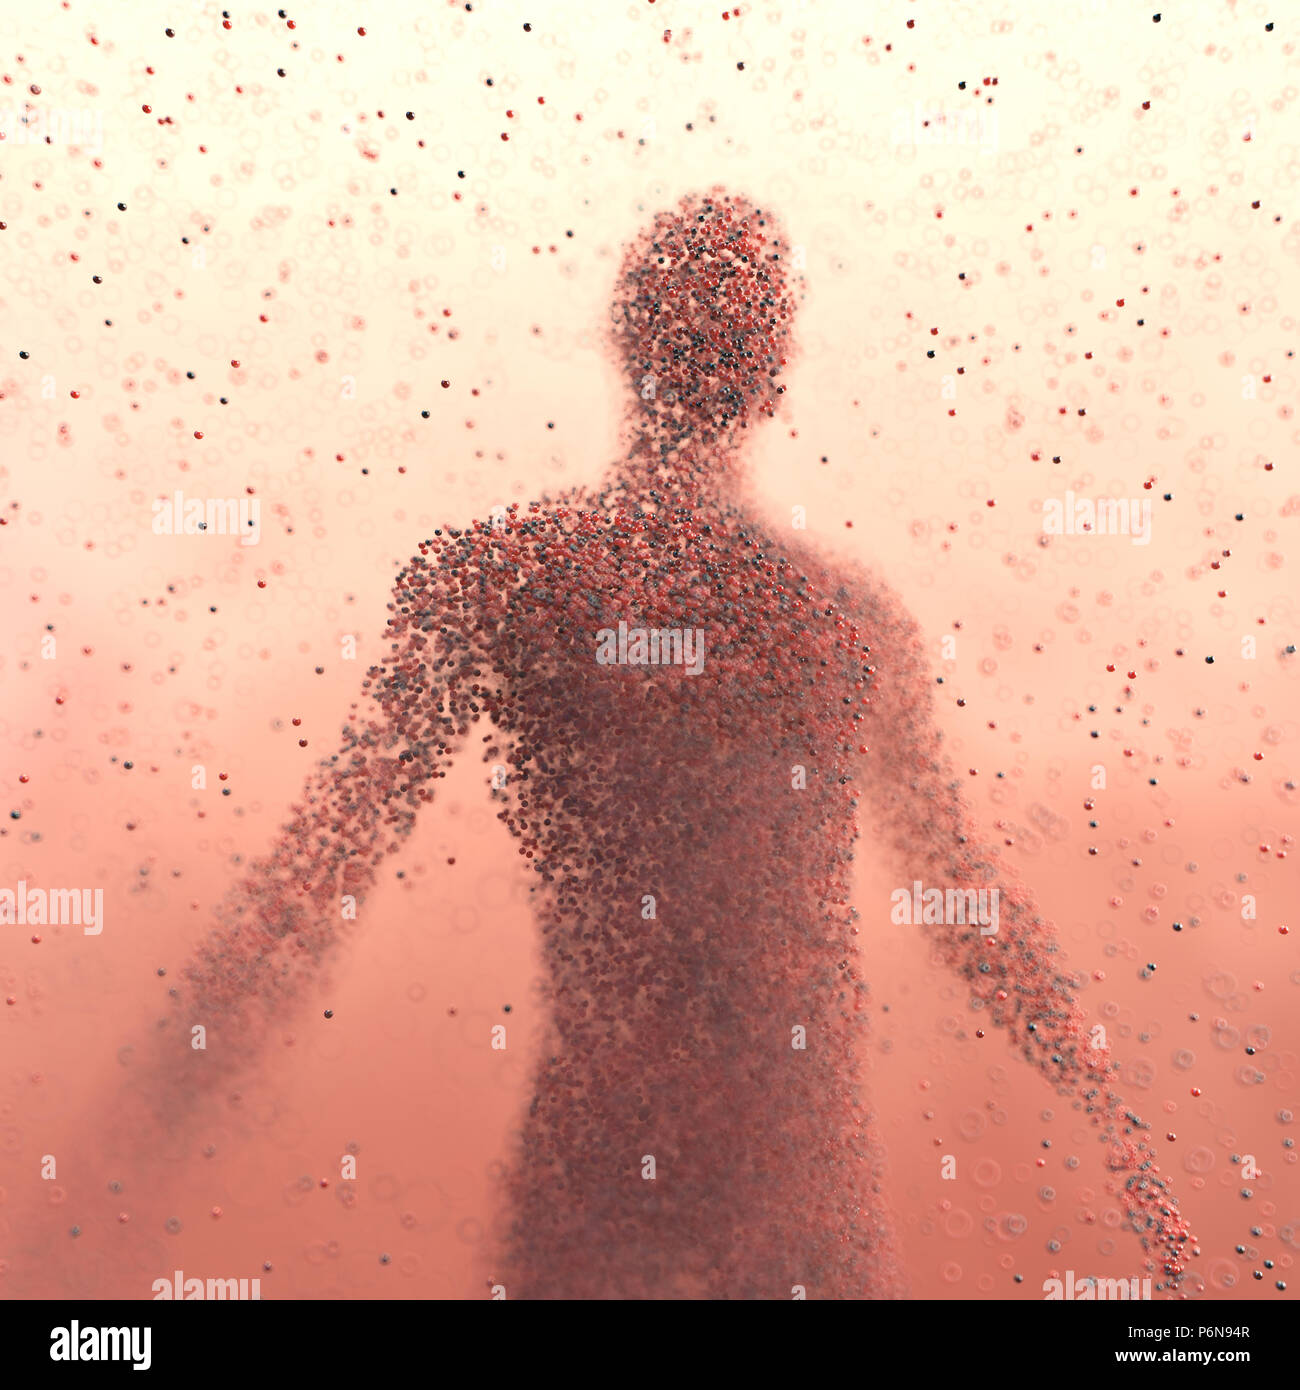 3D illustration. Corps humain façonné avec des molécules d'un concept des sciences de l'image. Banque D'Images